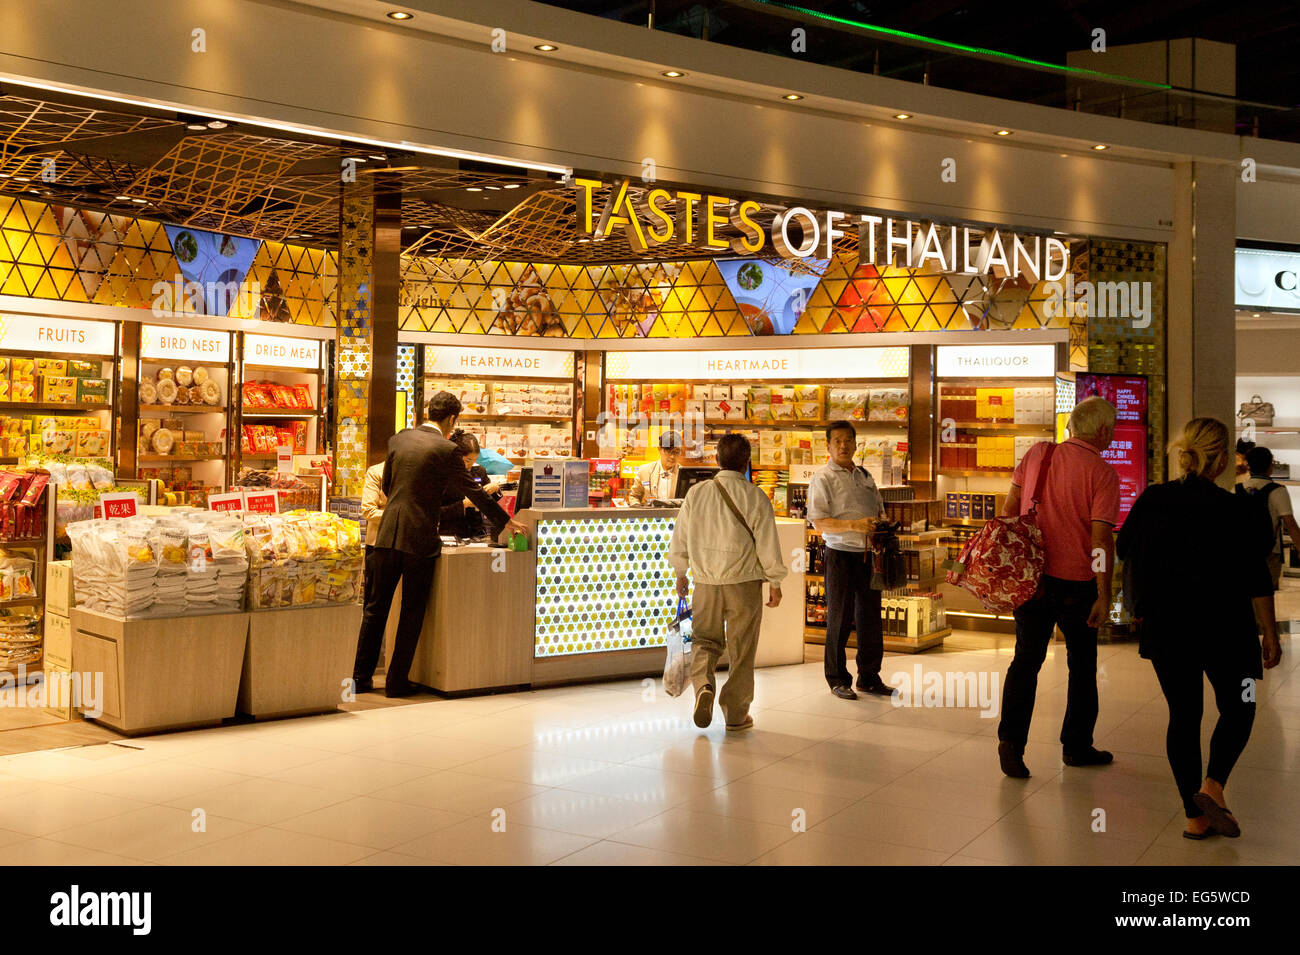 Les saveurs de la Thaïlande food store, l'aéroport de Suvarnabhumi, ou de l'Aéroport International de Bangkok, Bangkok, Thaïlande, Asie Banque D'Images